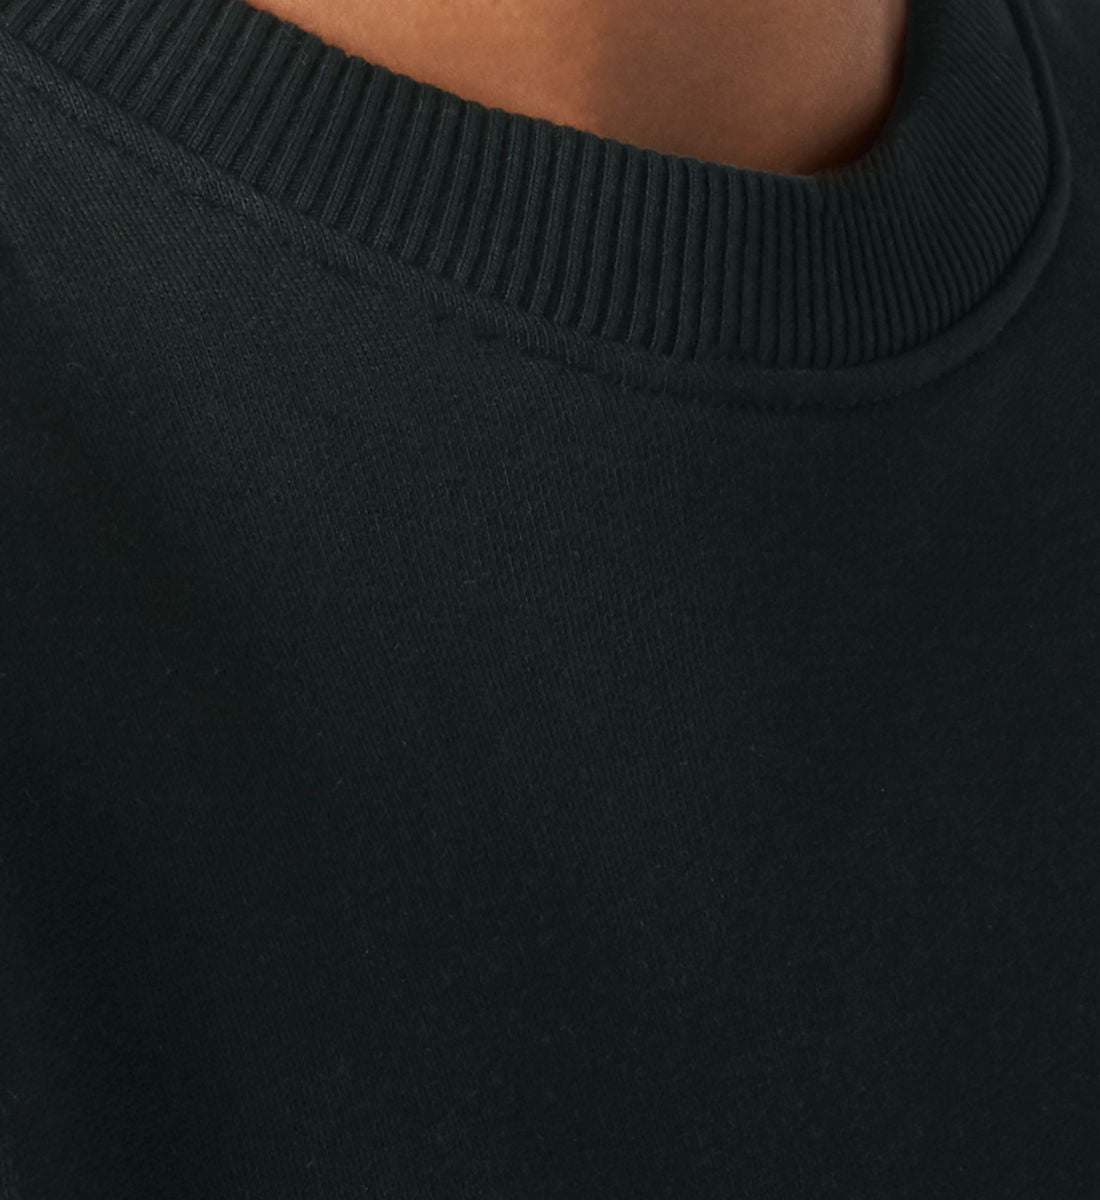 Schwarzes Sweatshirt Unisex für Frauen und Männer bedruckt mit dem Design der Roger Rockawoo Kollektion Dream Big